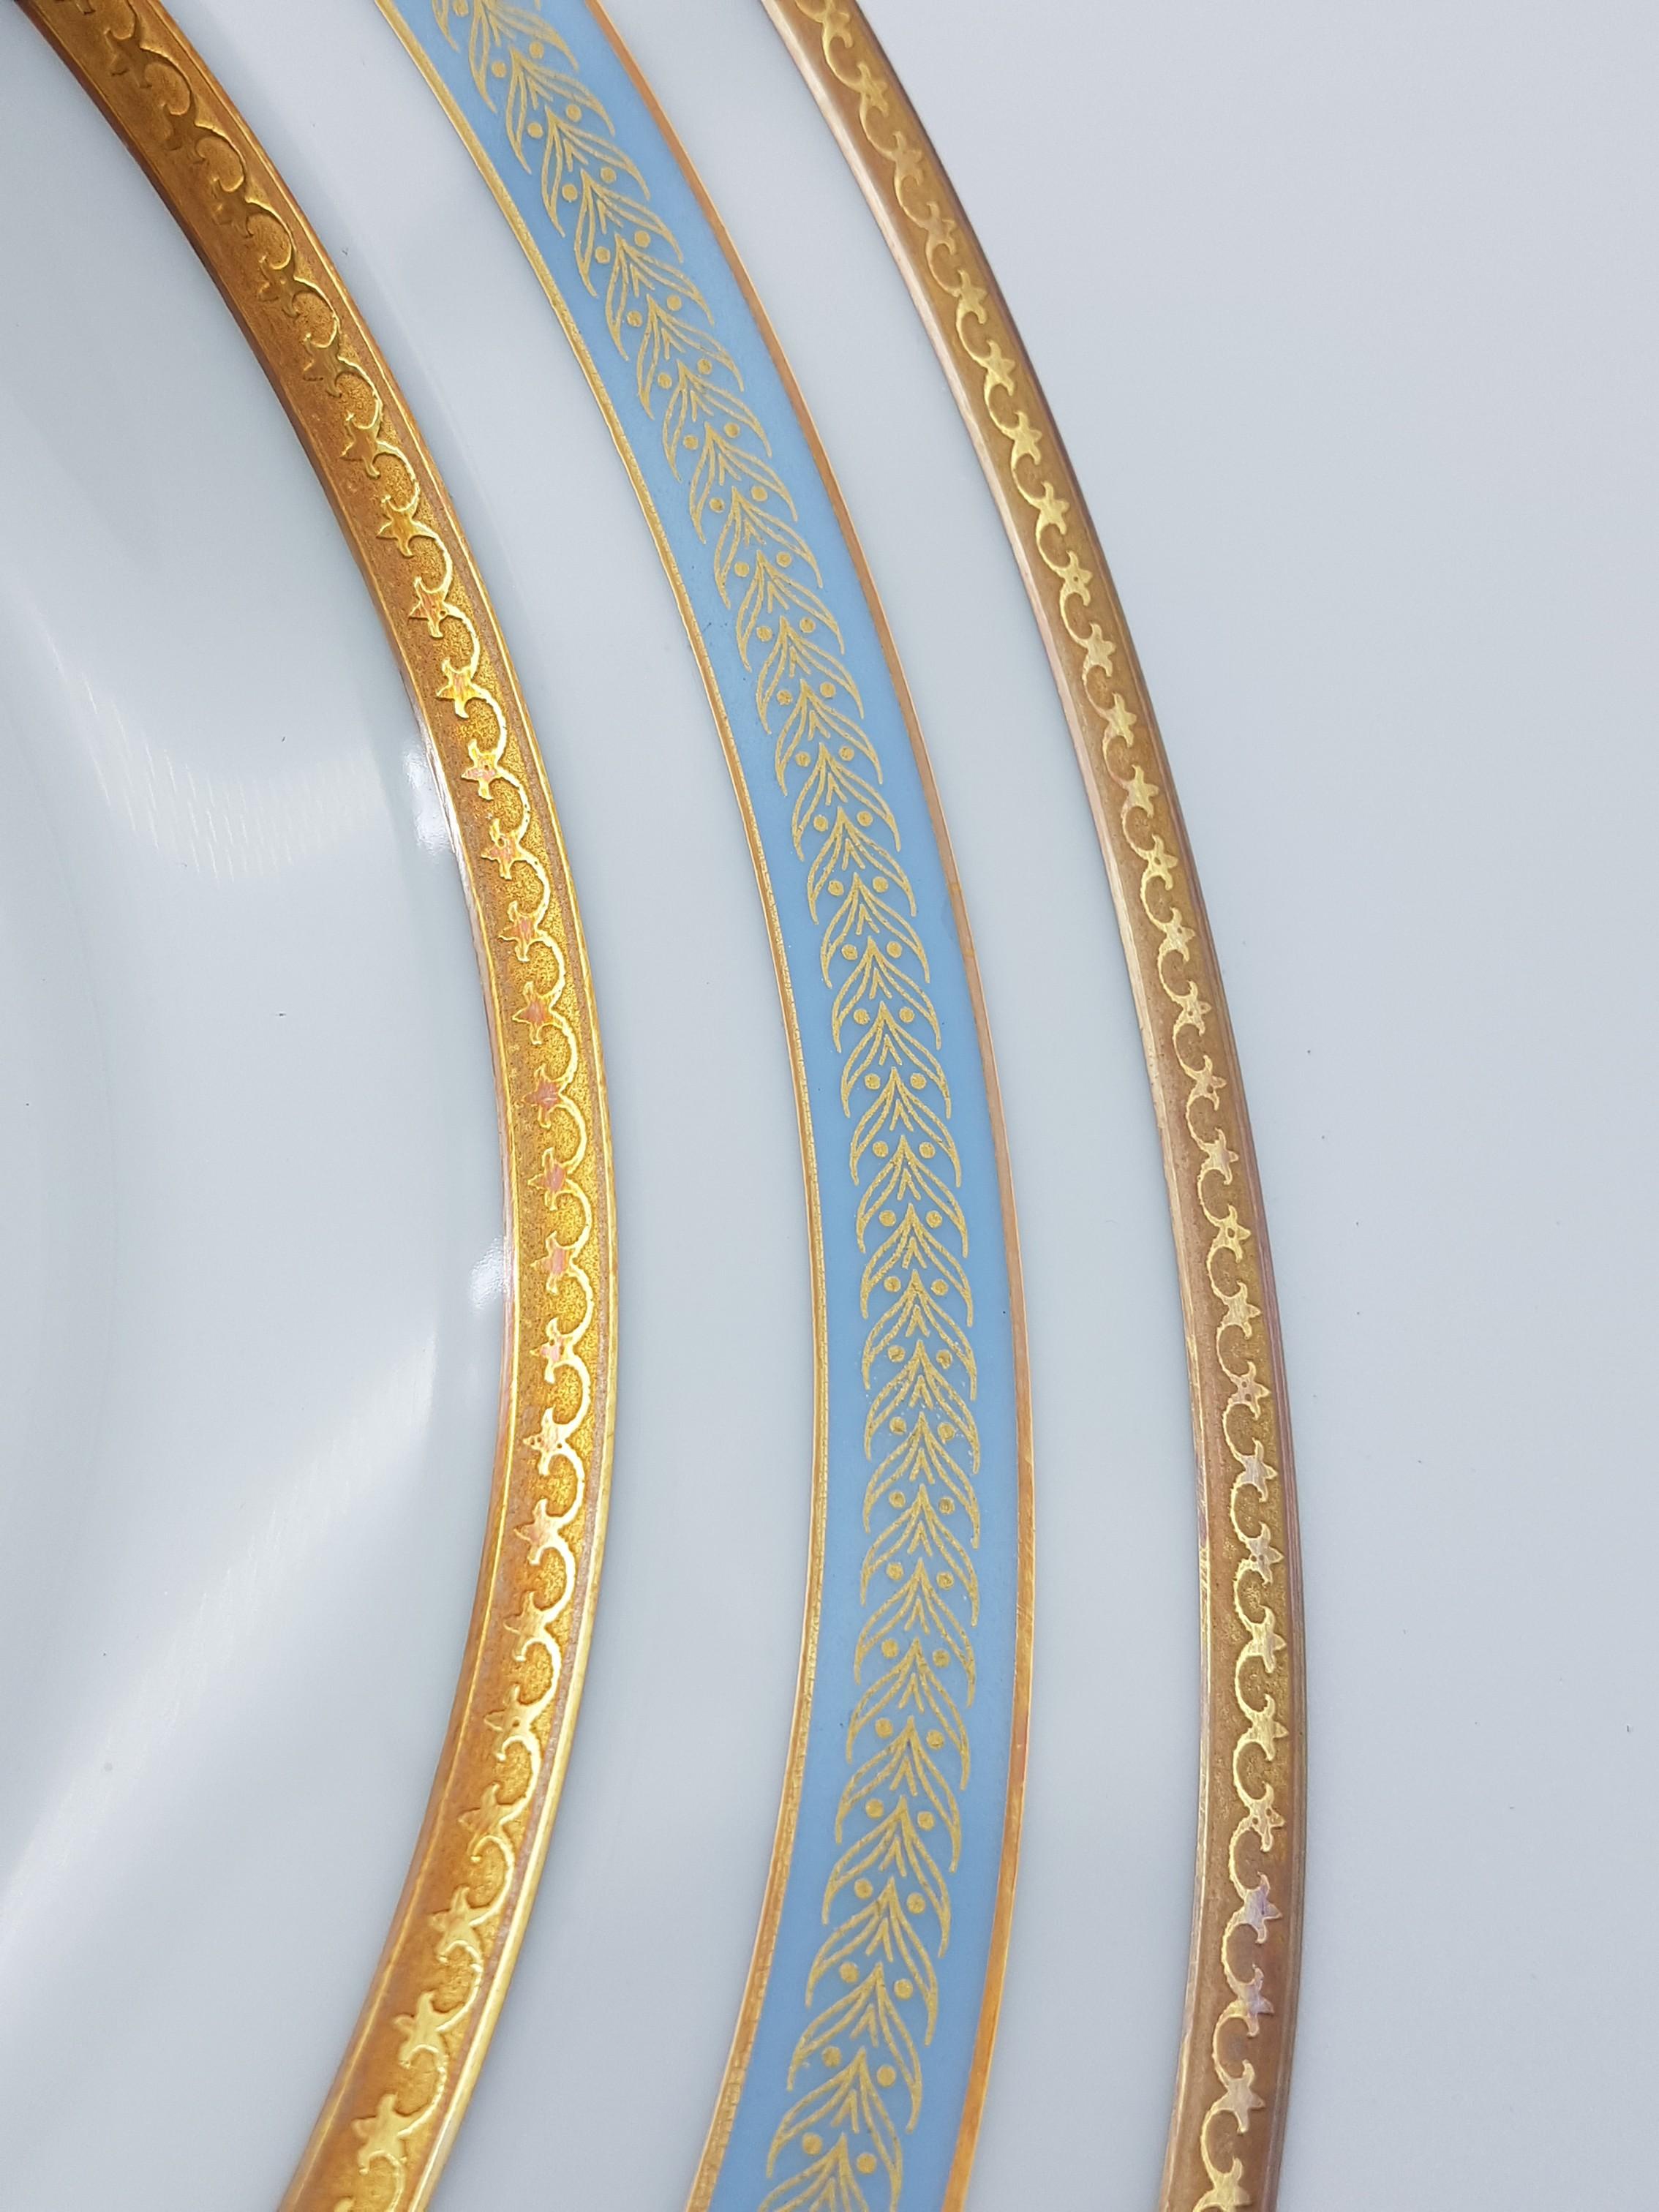 Heinrich Bavaria Porcelain Dinner Service, 18-Piece Gold Rimmed Bone China Set For Sale 3